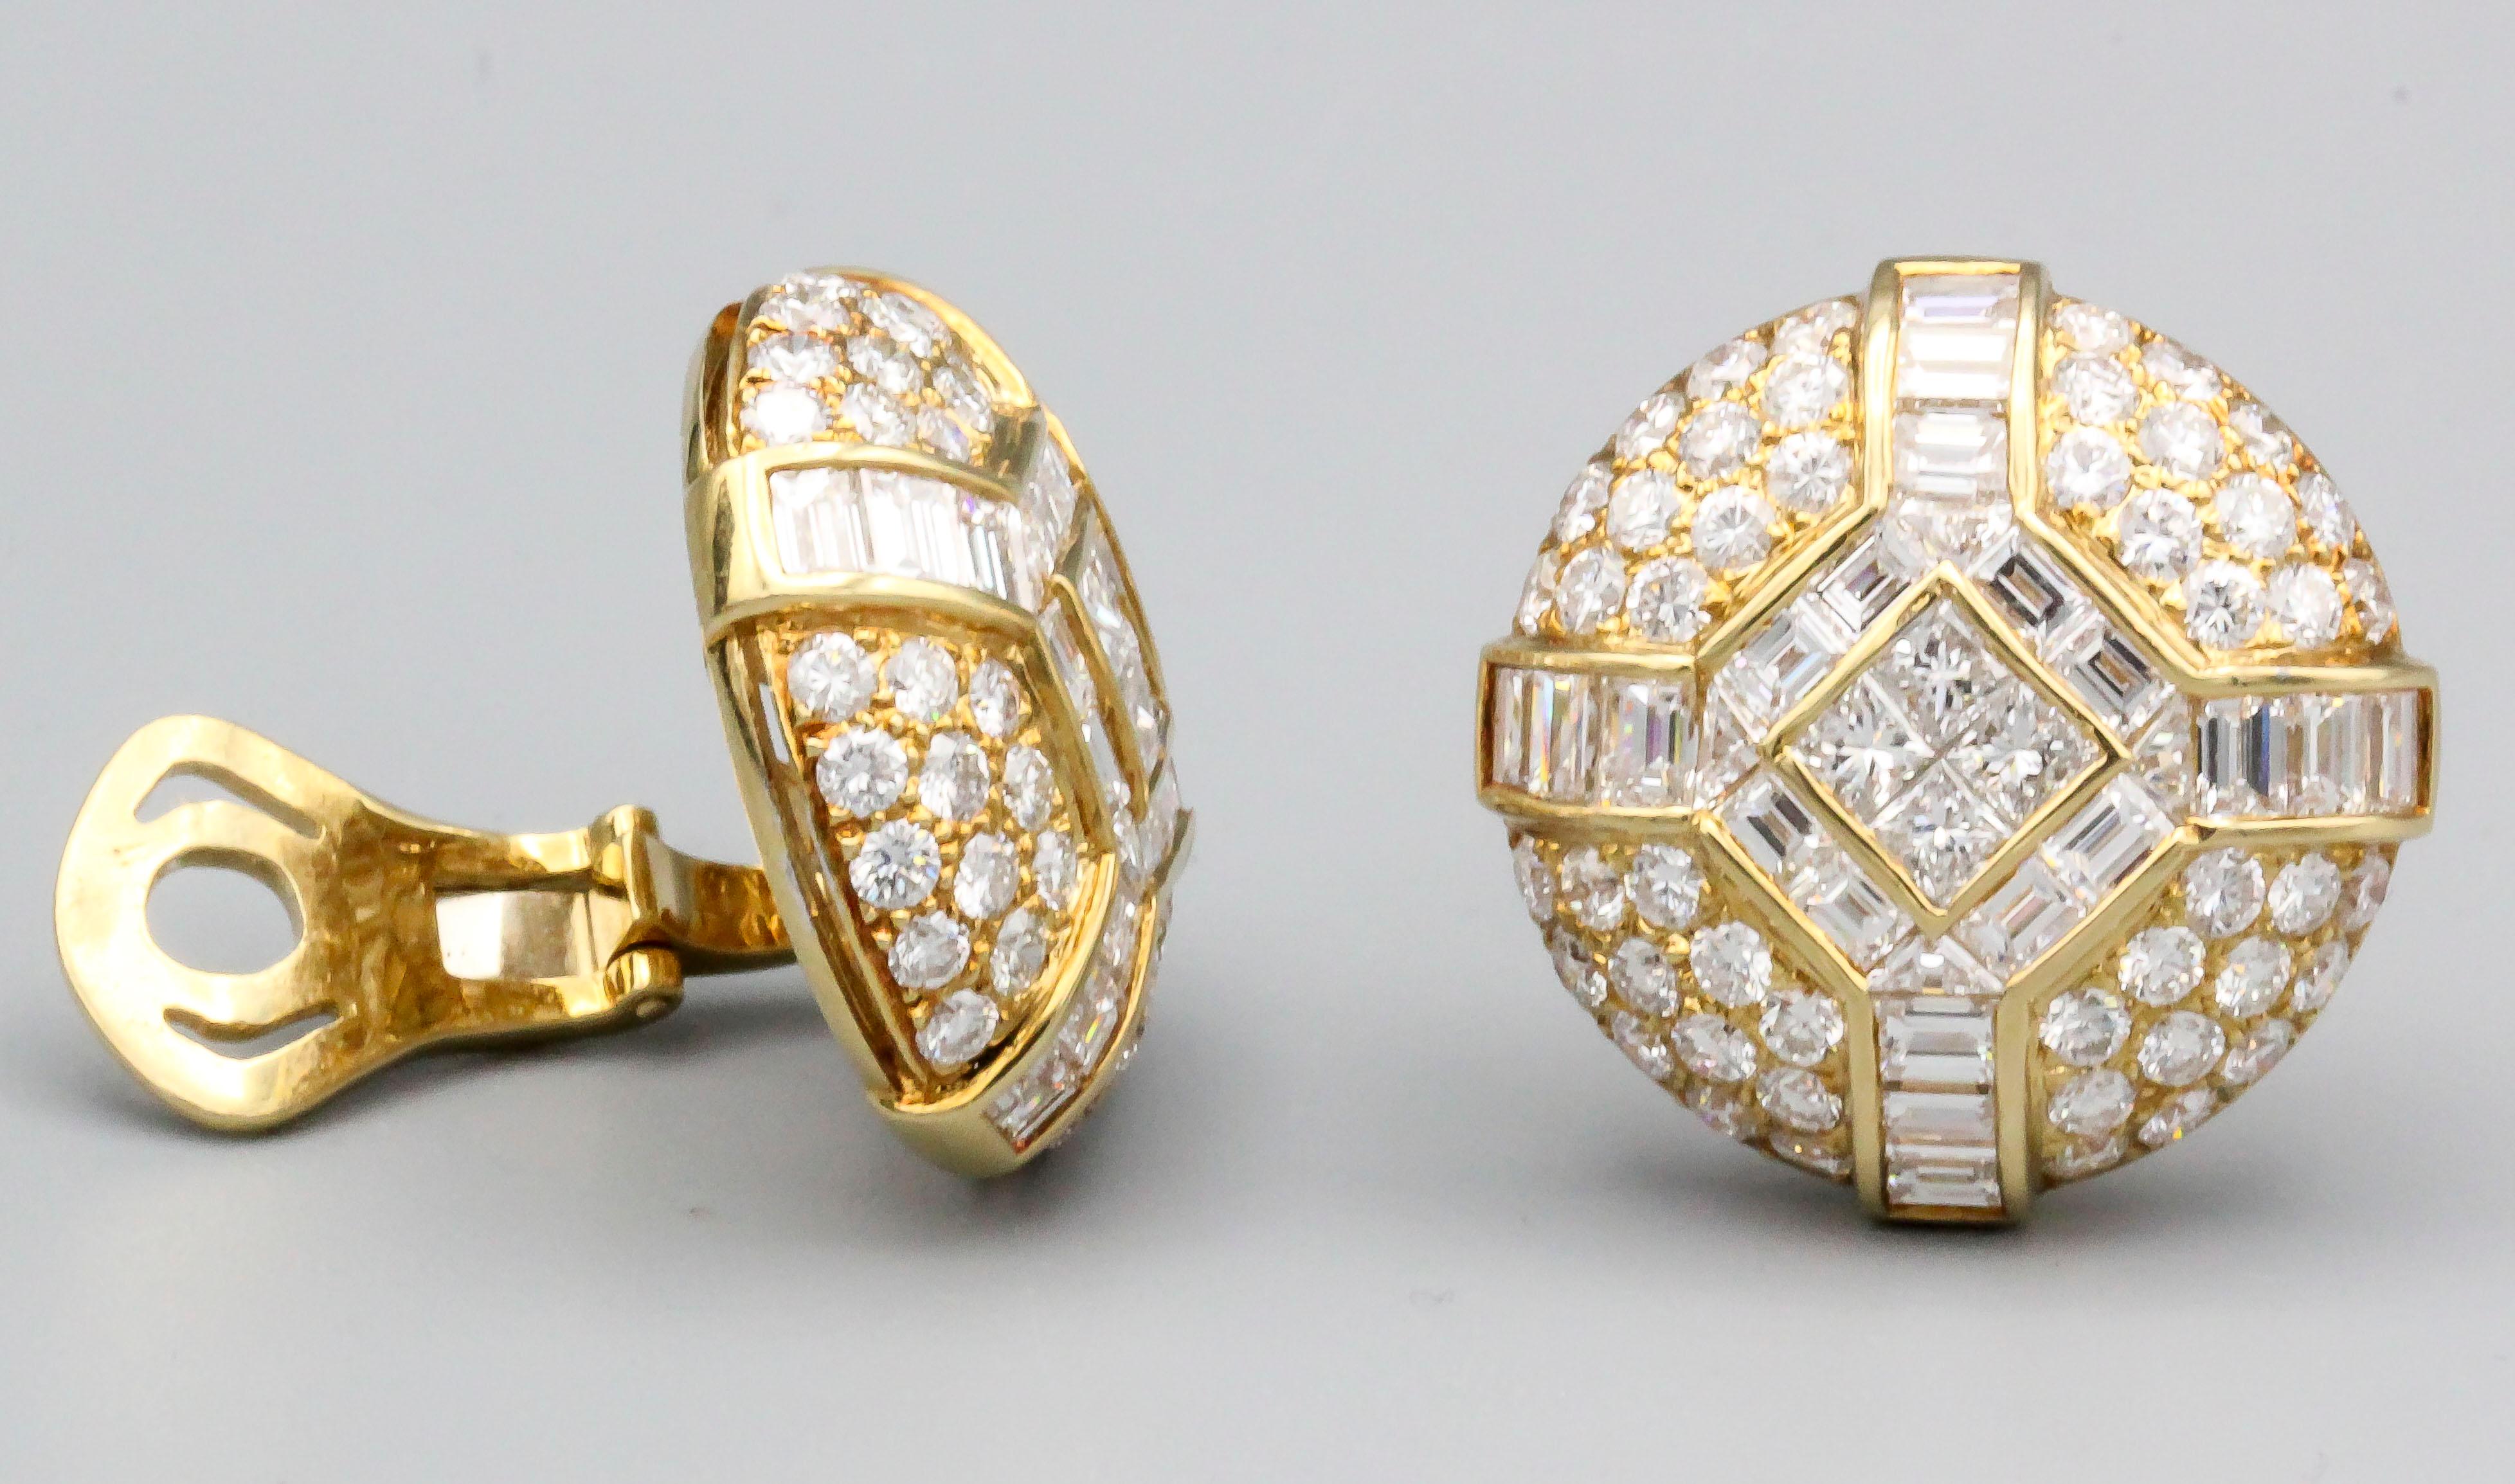 Feines Paar Diamanten und 18k Gelbgold Kuppel Ohrringe von Bulgari, ca. 1970-80er Jahre.  Sie verfügen über runde, Baguette- und Prinzess-Diamanten mit einem Gesamtgewicht von ca. 10-12 Karat.  

Punzierungen: Bvlgari, 18k, 750, italienische